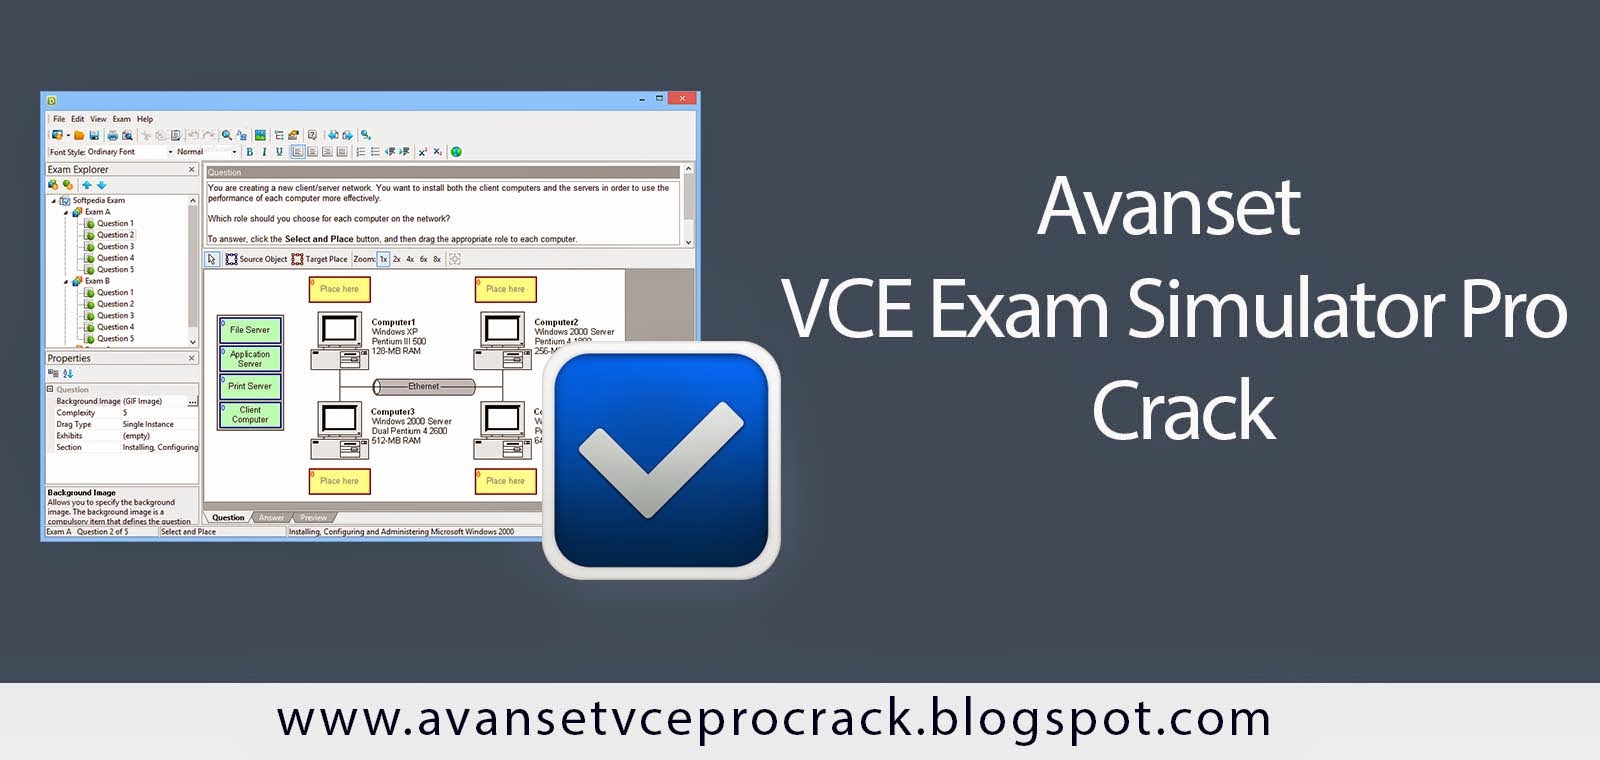 avanset-vce-exam-simulator-pro-crack-avanset-vce-exam-simulator-pro-crack-free-download